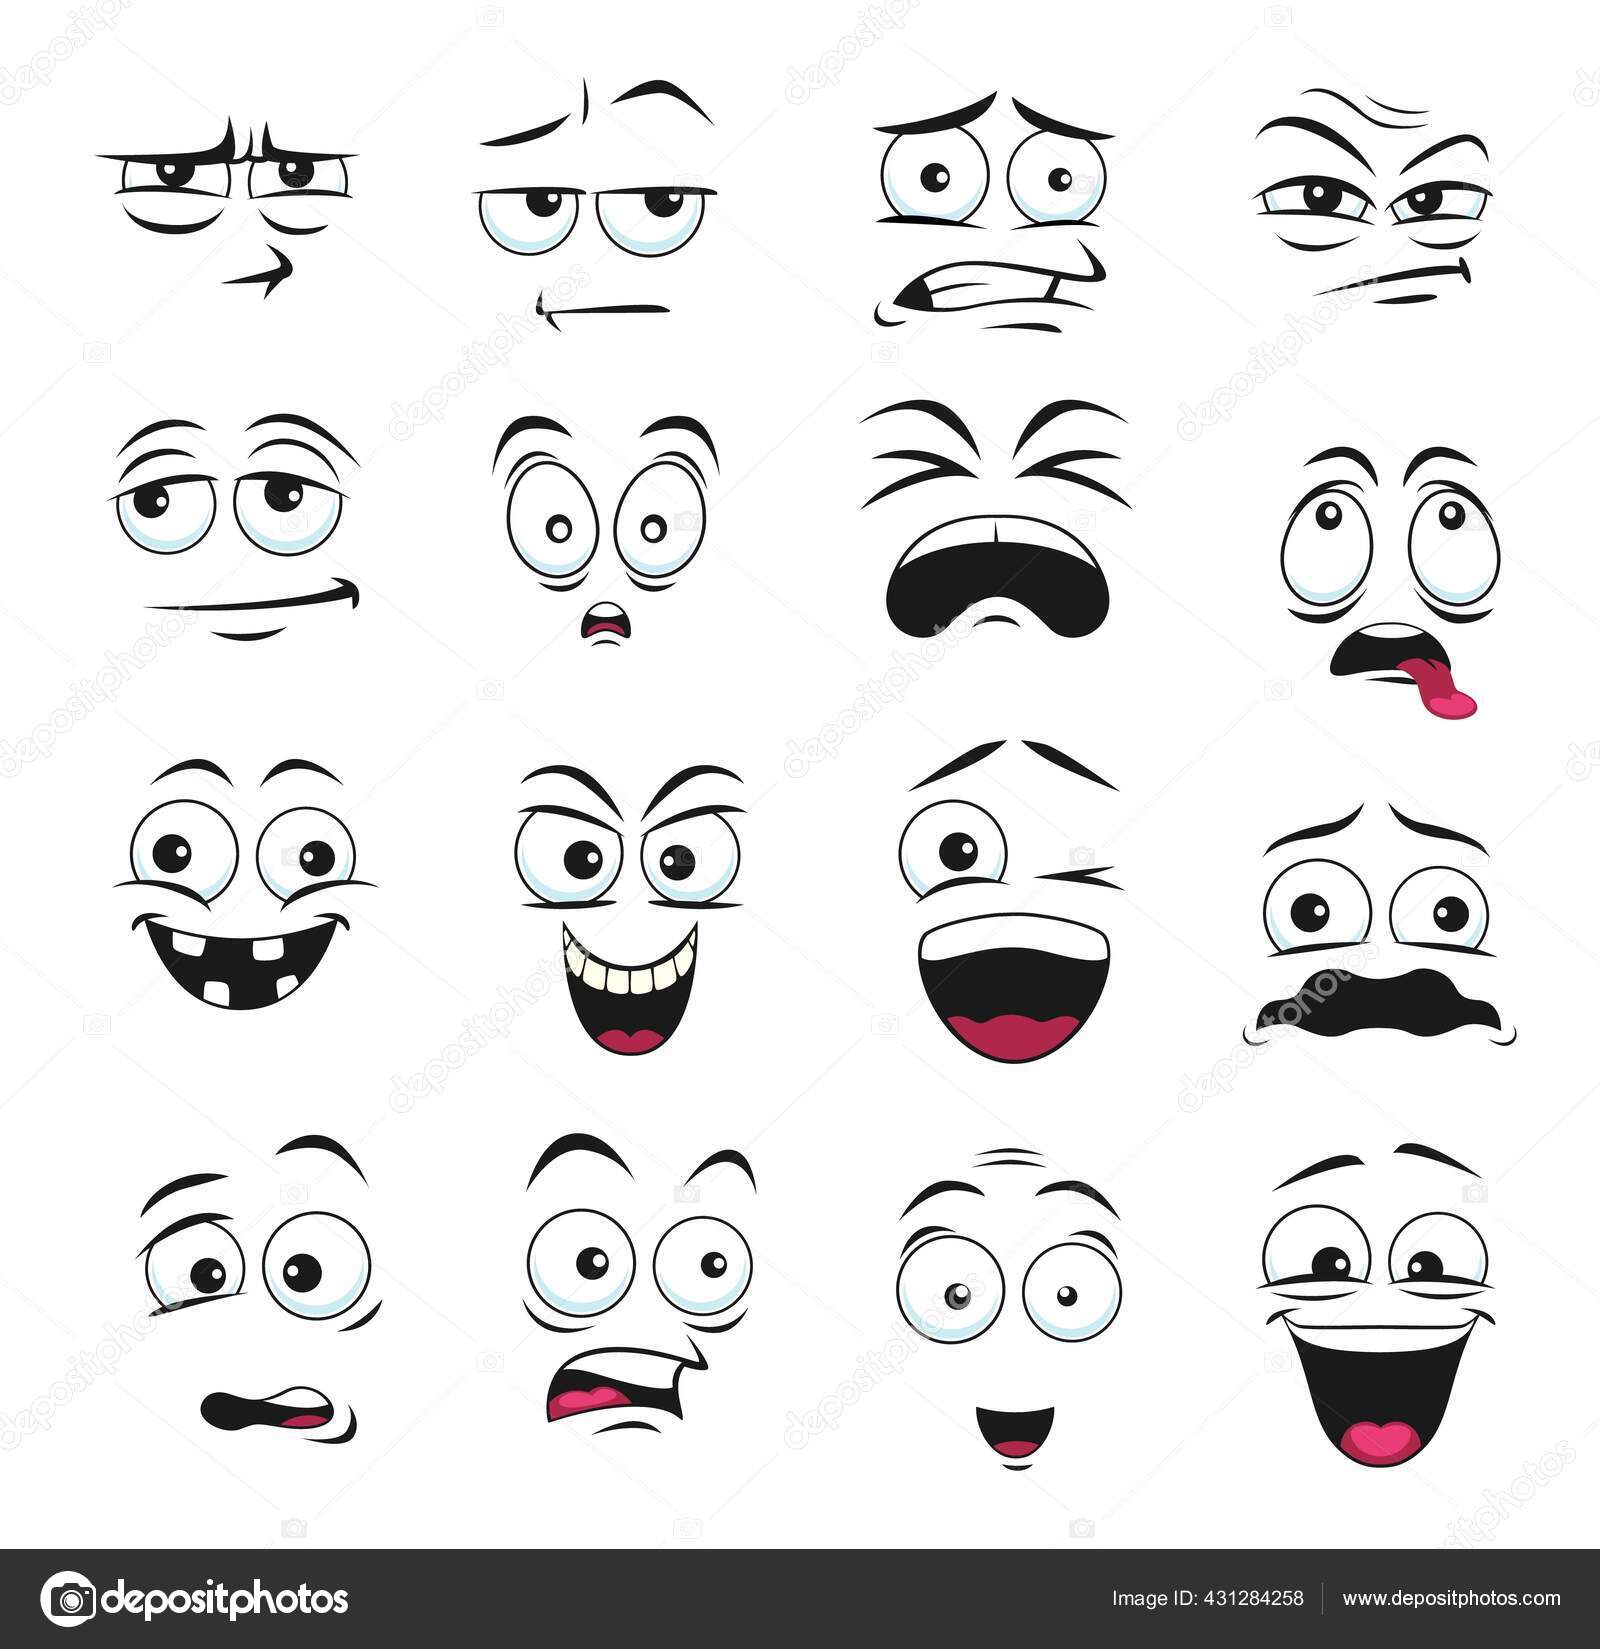 Emoticon Perturbado Com Expressão Facial Triste Ícone Isolado Vetor Emoji  imagem vetorial de Seamartini© 504558338